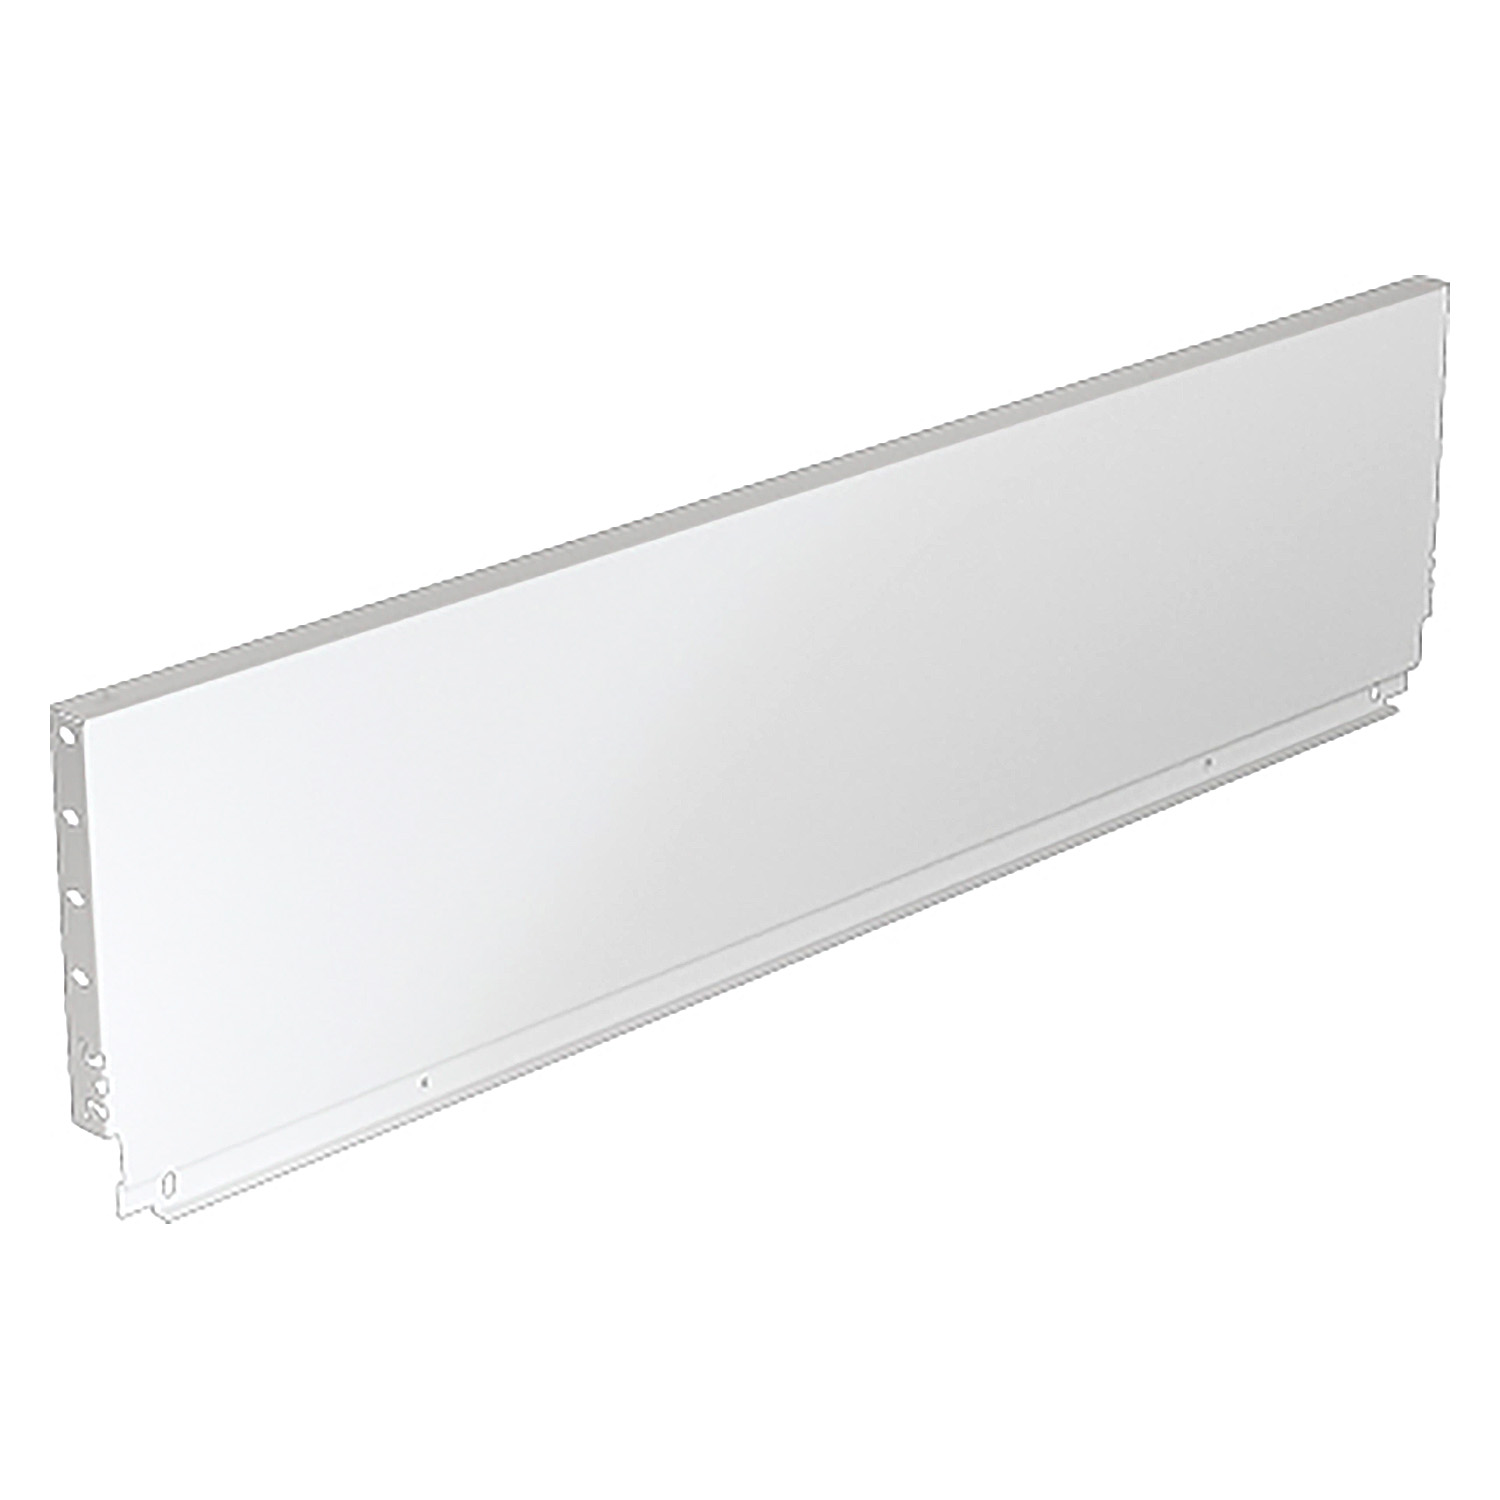 HETTICH Stahlrückwand ArciTech, 218 x 550 mm, weiß, 9121620